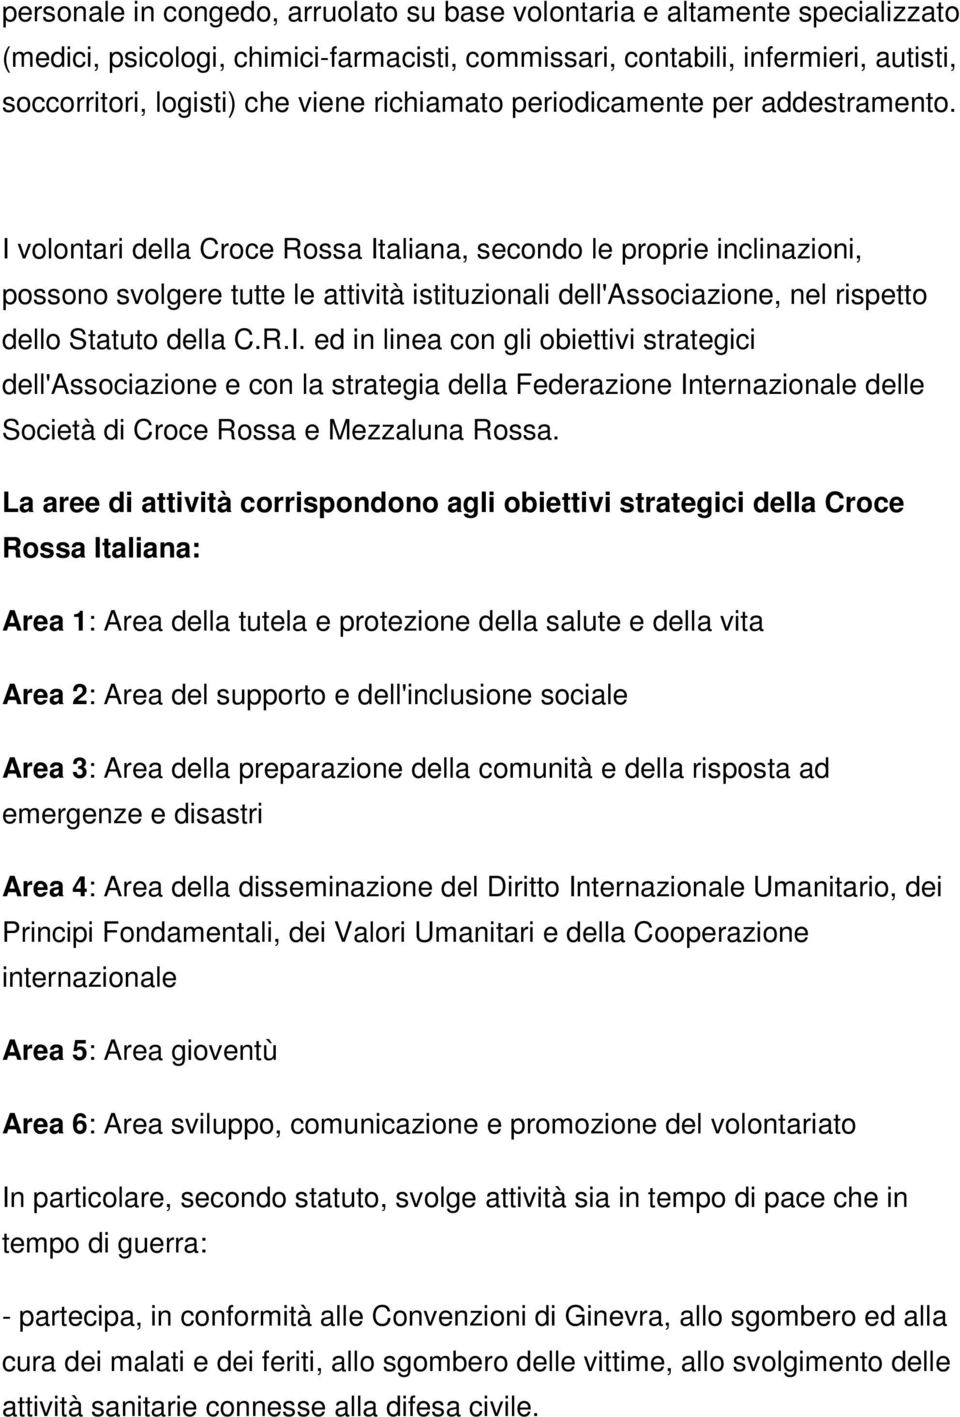 I volontari della Croce Rossa Italiana, secondo le proprie inclinazioni, possono svolgere tutte le attività istituzionali dell'associazione, nel rispetto dello Statuto della C.R.I. ed in linea con gli obiettivi strategici dell'associazione e con la strategia della Federazione Internazionale delle Società di Croce Rossa e Mezzaluna Rossa.